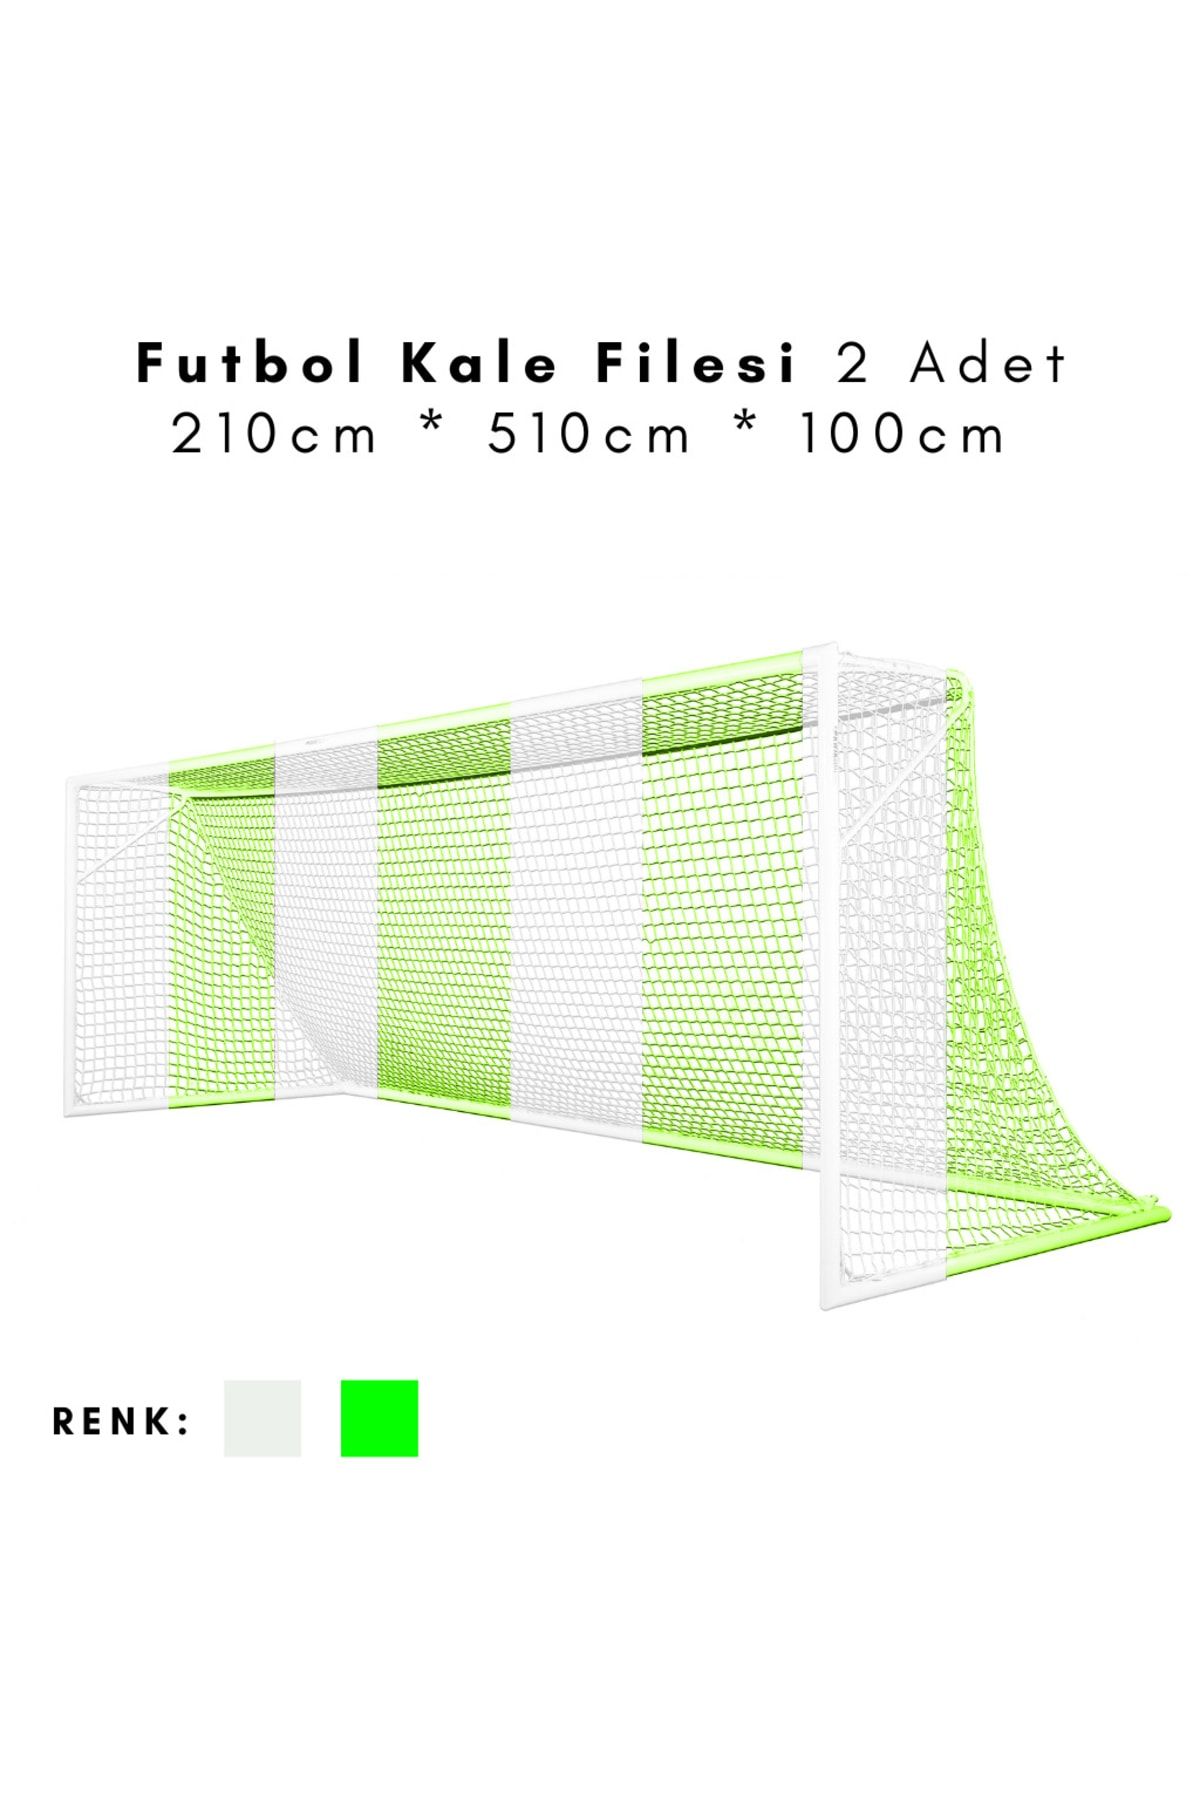 ÖZBEK Futbol Kale Filesi - Halı Saha Kale Ağı 210 * 510 * 100cm (2 Adet File)